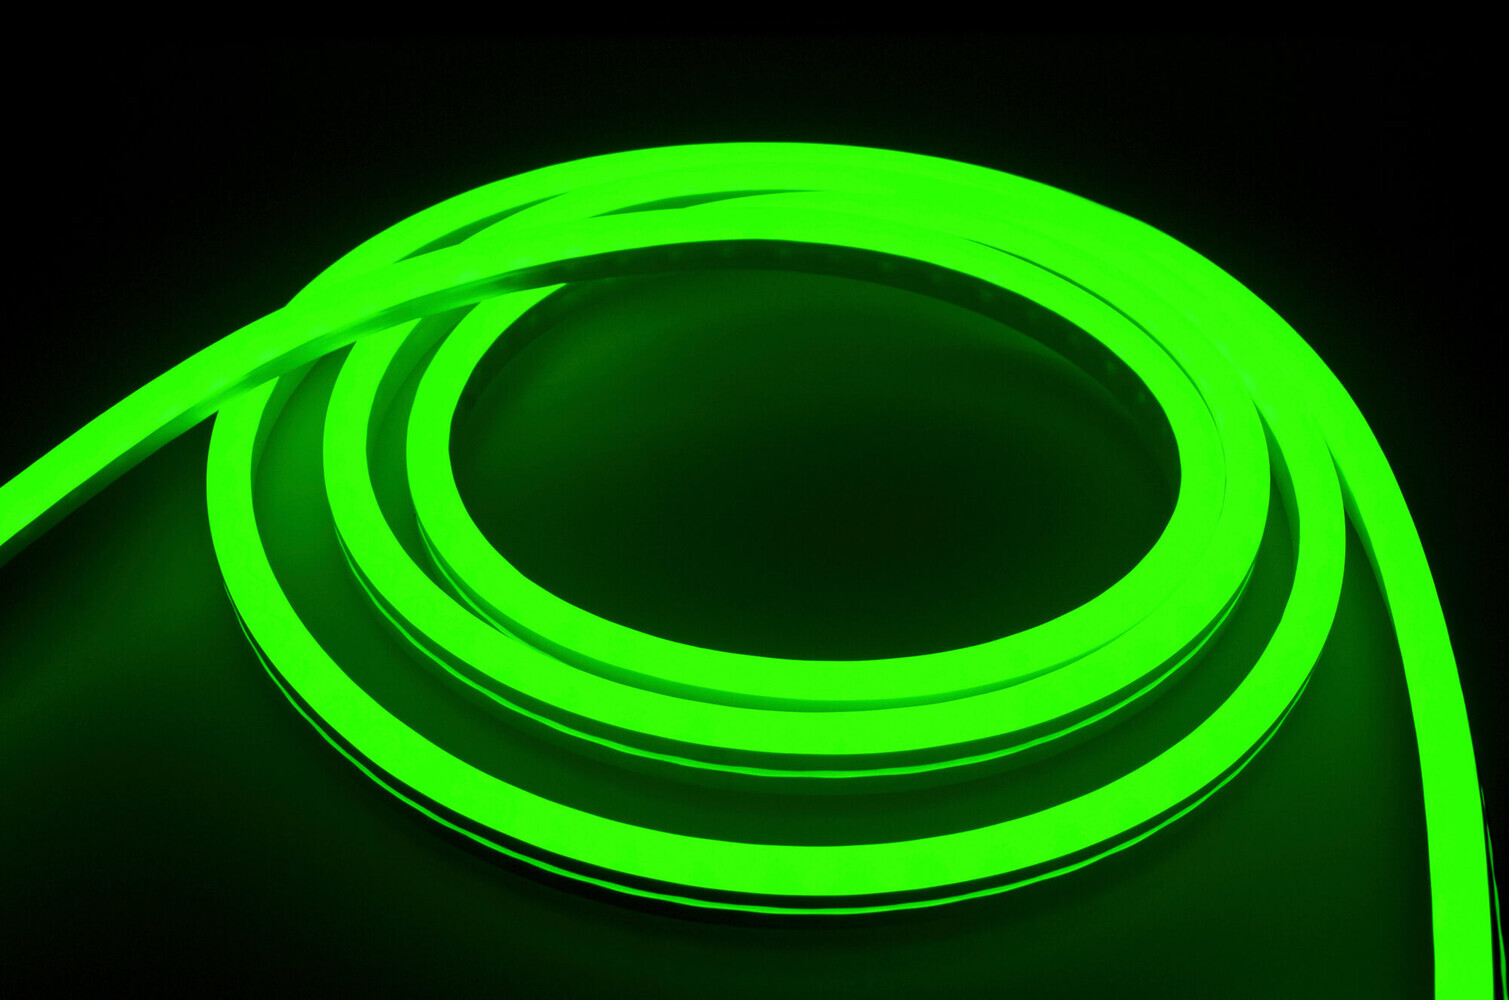 Hochwertiger, leuchtstarker LED Streifen von LED Universum in RGB Funkausstrahlung